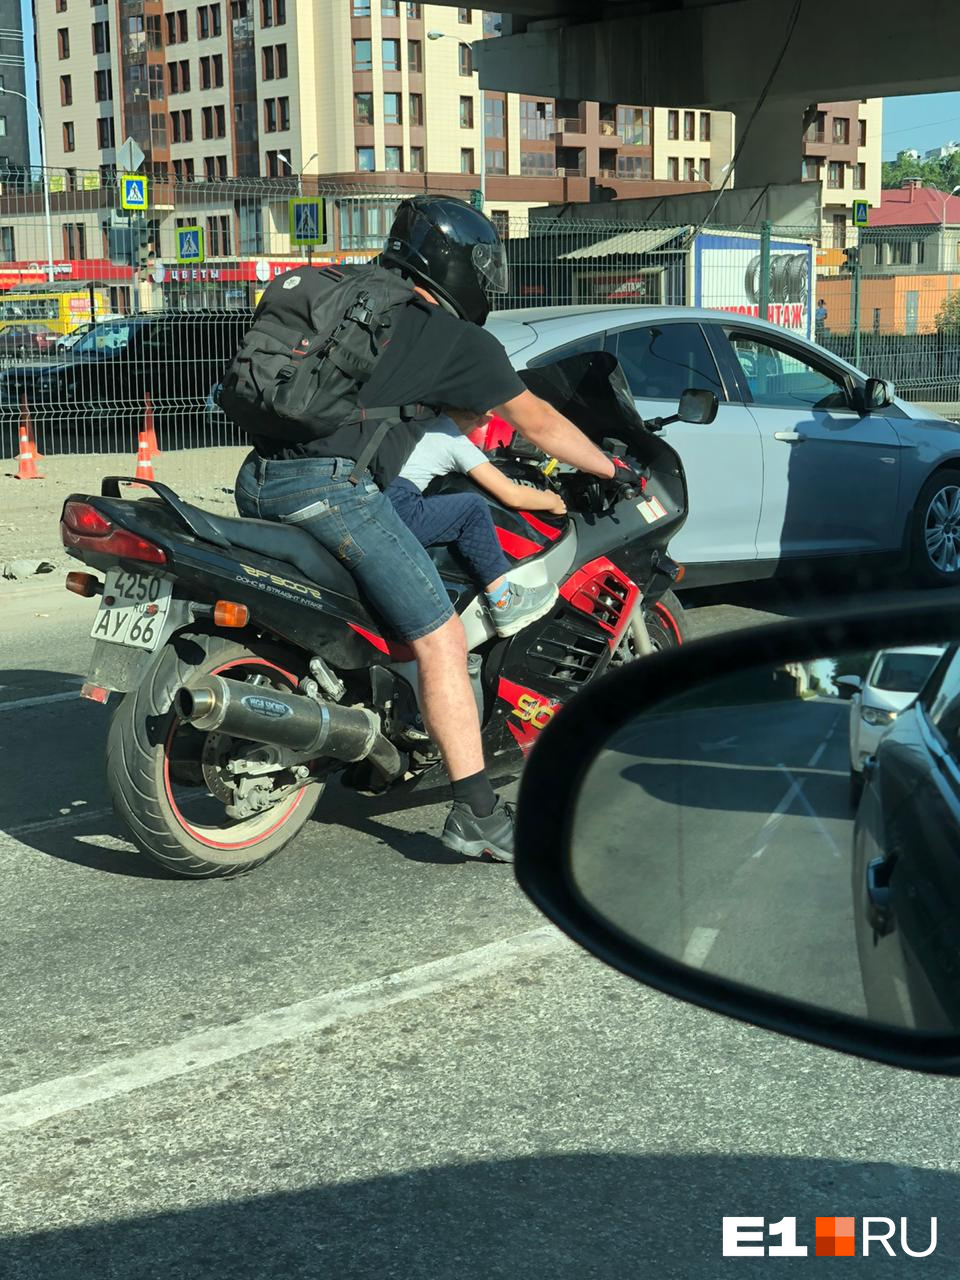 Мужчина управлял мотоциклом в шлеме, а вот о защите малыша не позаботился